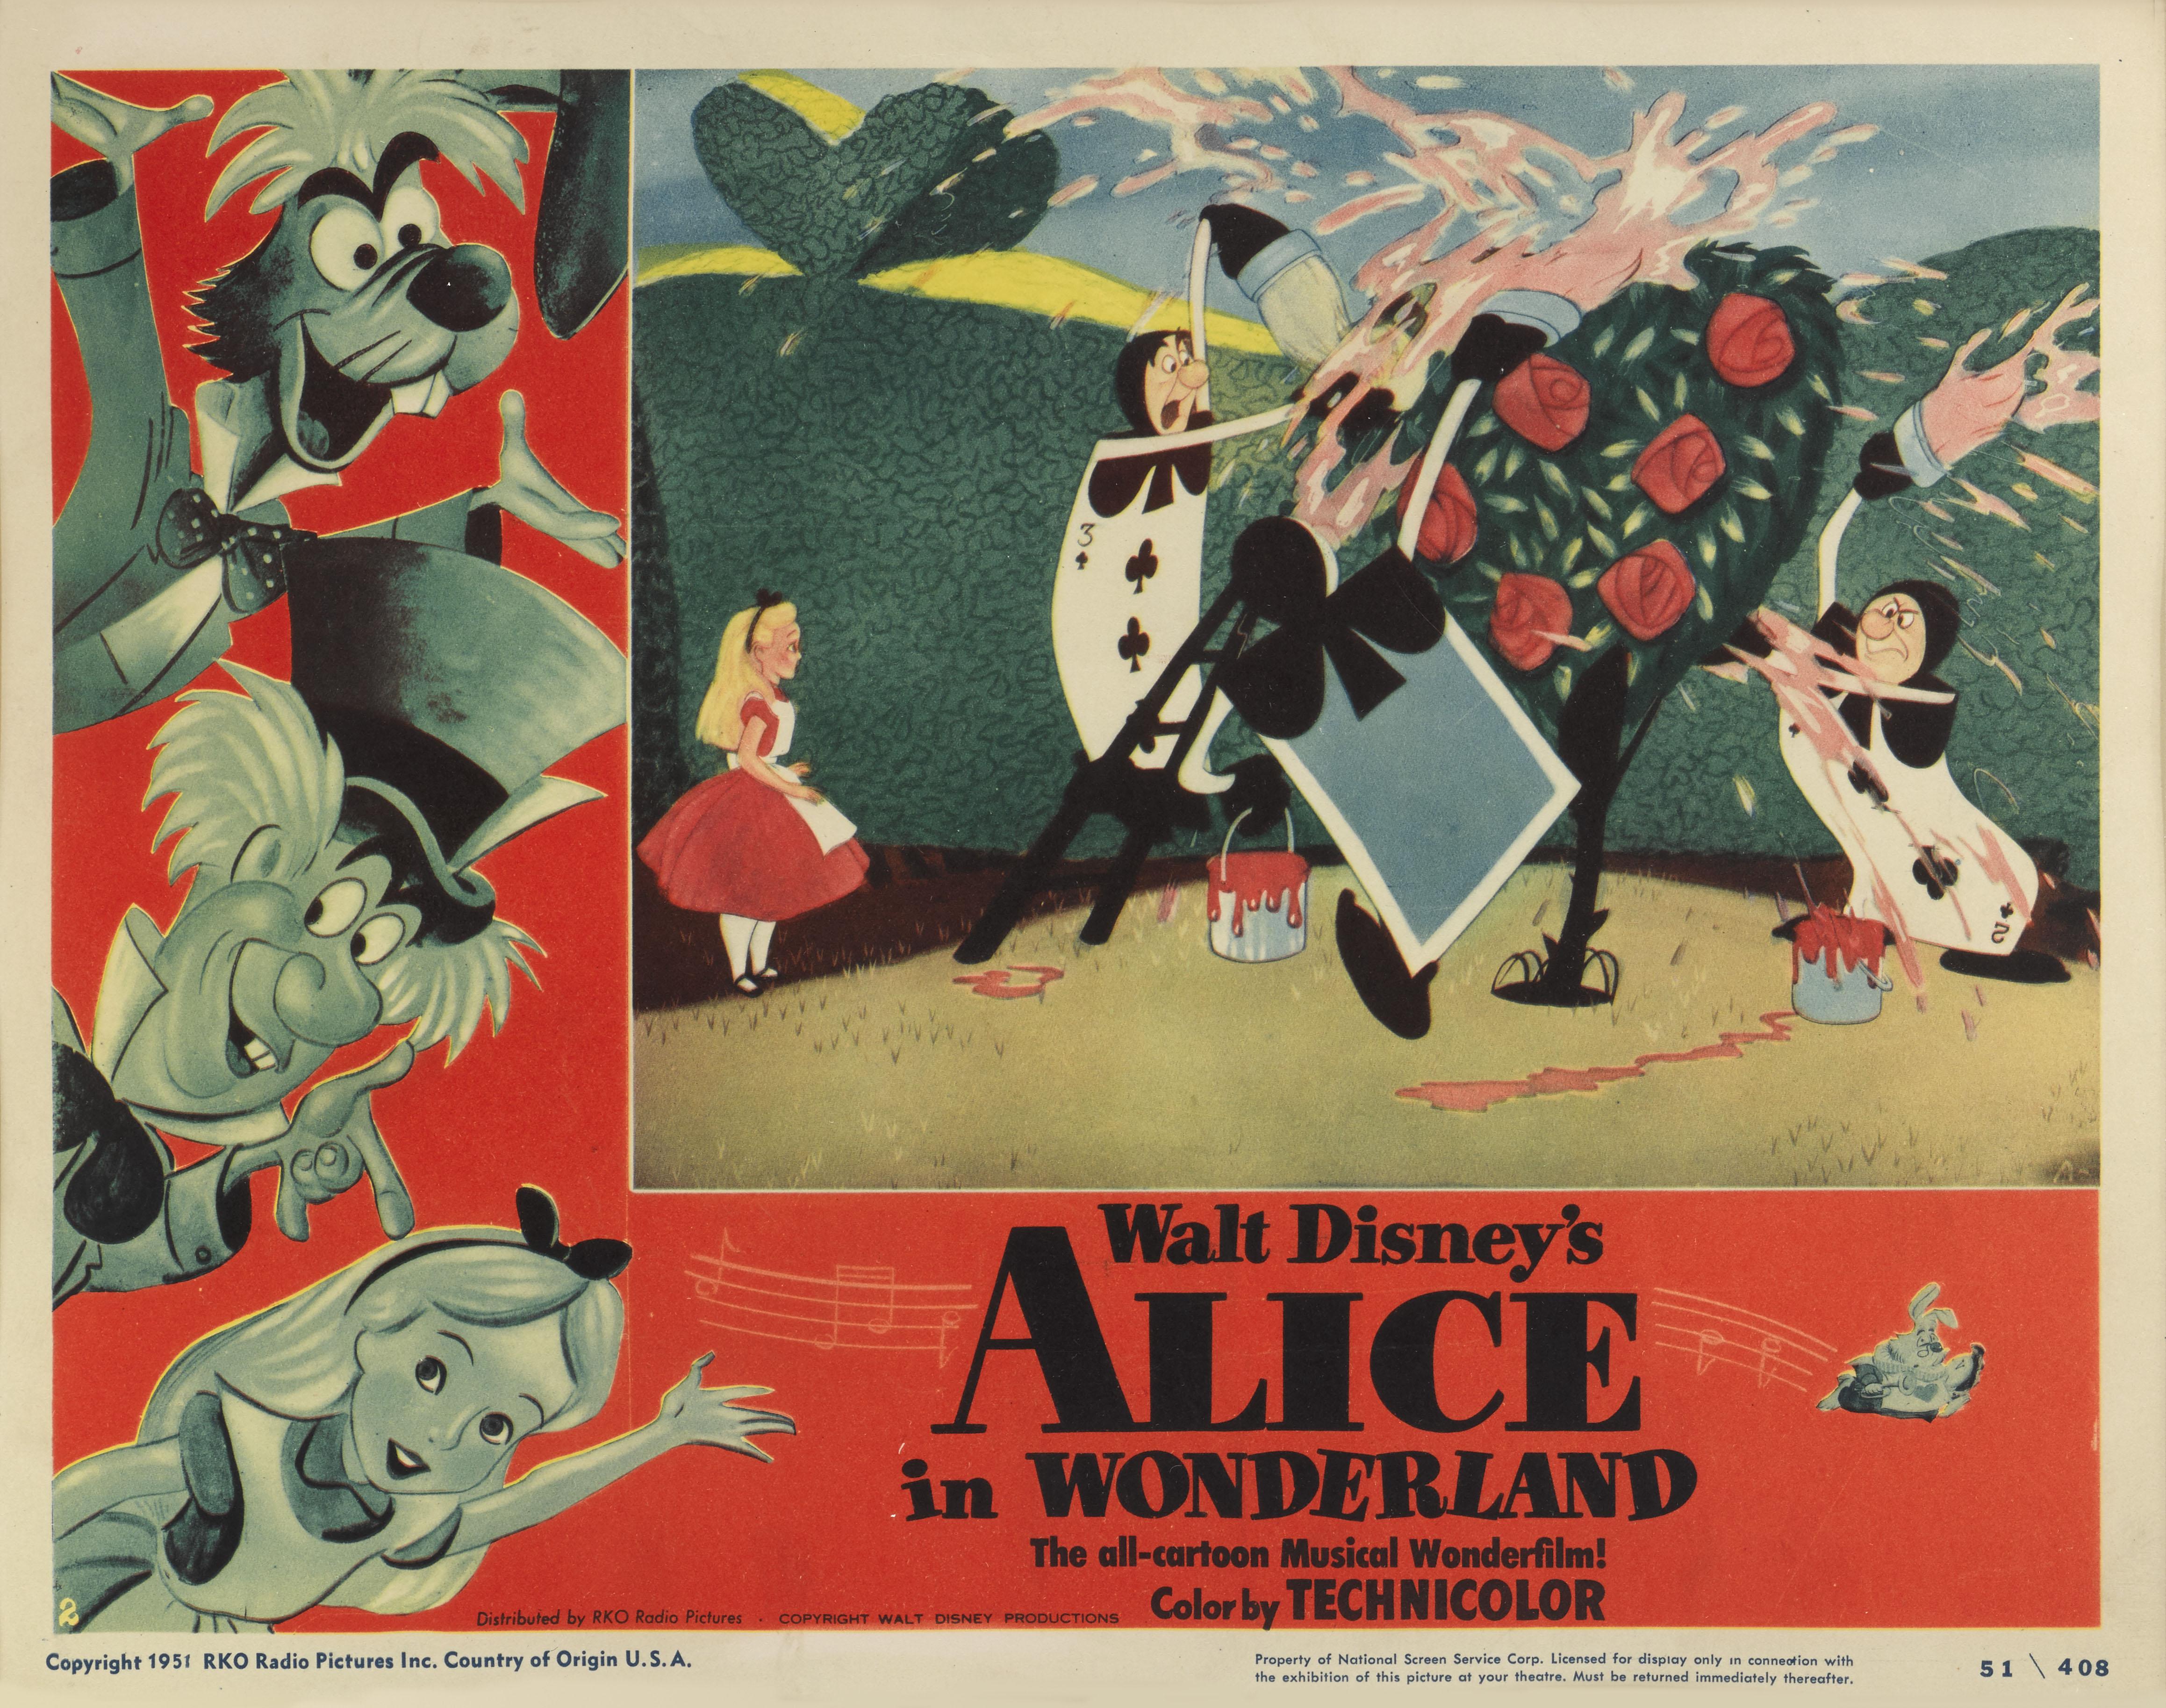 Original gerahmte US-Lobbykarte von 1951.
Alice im Wunderland wurde 1951 von Walt Disney veröffentlicht und basiert auf den Alice-Büchern von Lewis Carroll. Es war der dreizehnte Zeichentrickfilm, den Disney produzierte. Walt Disney hatte in den